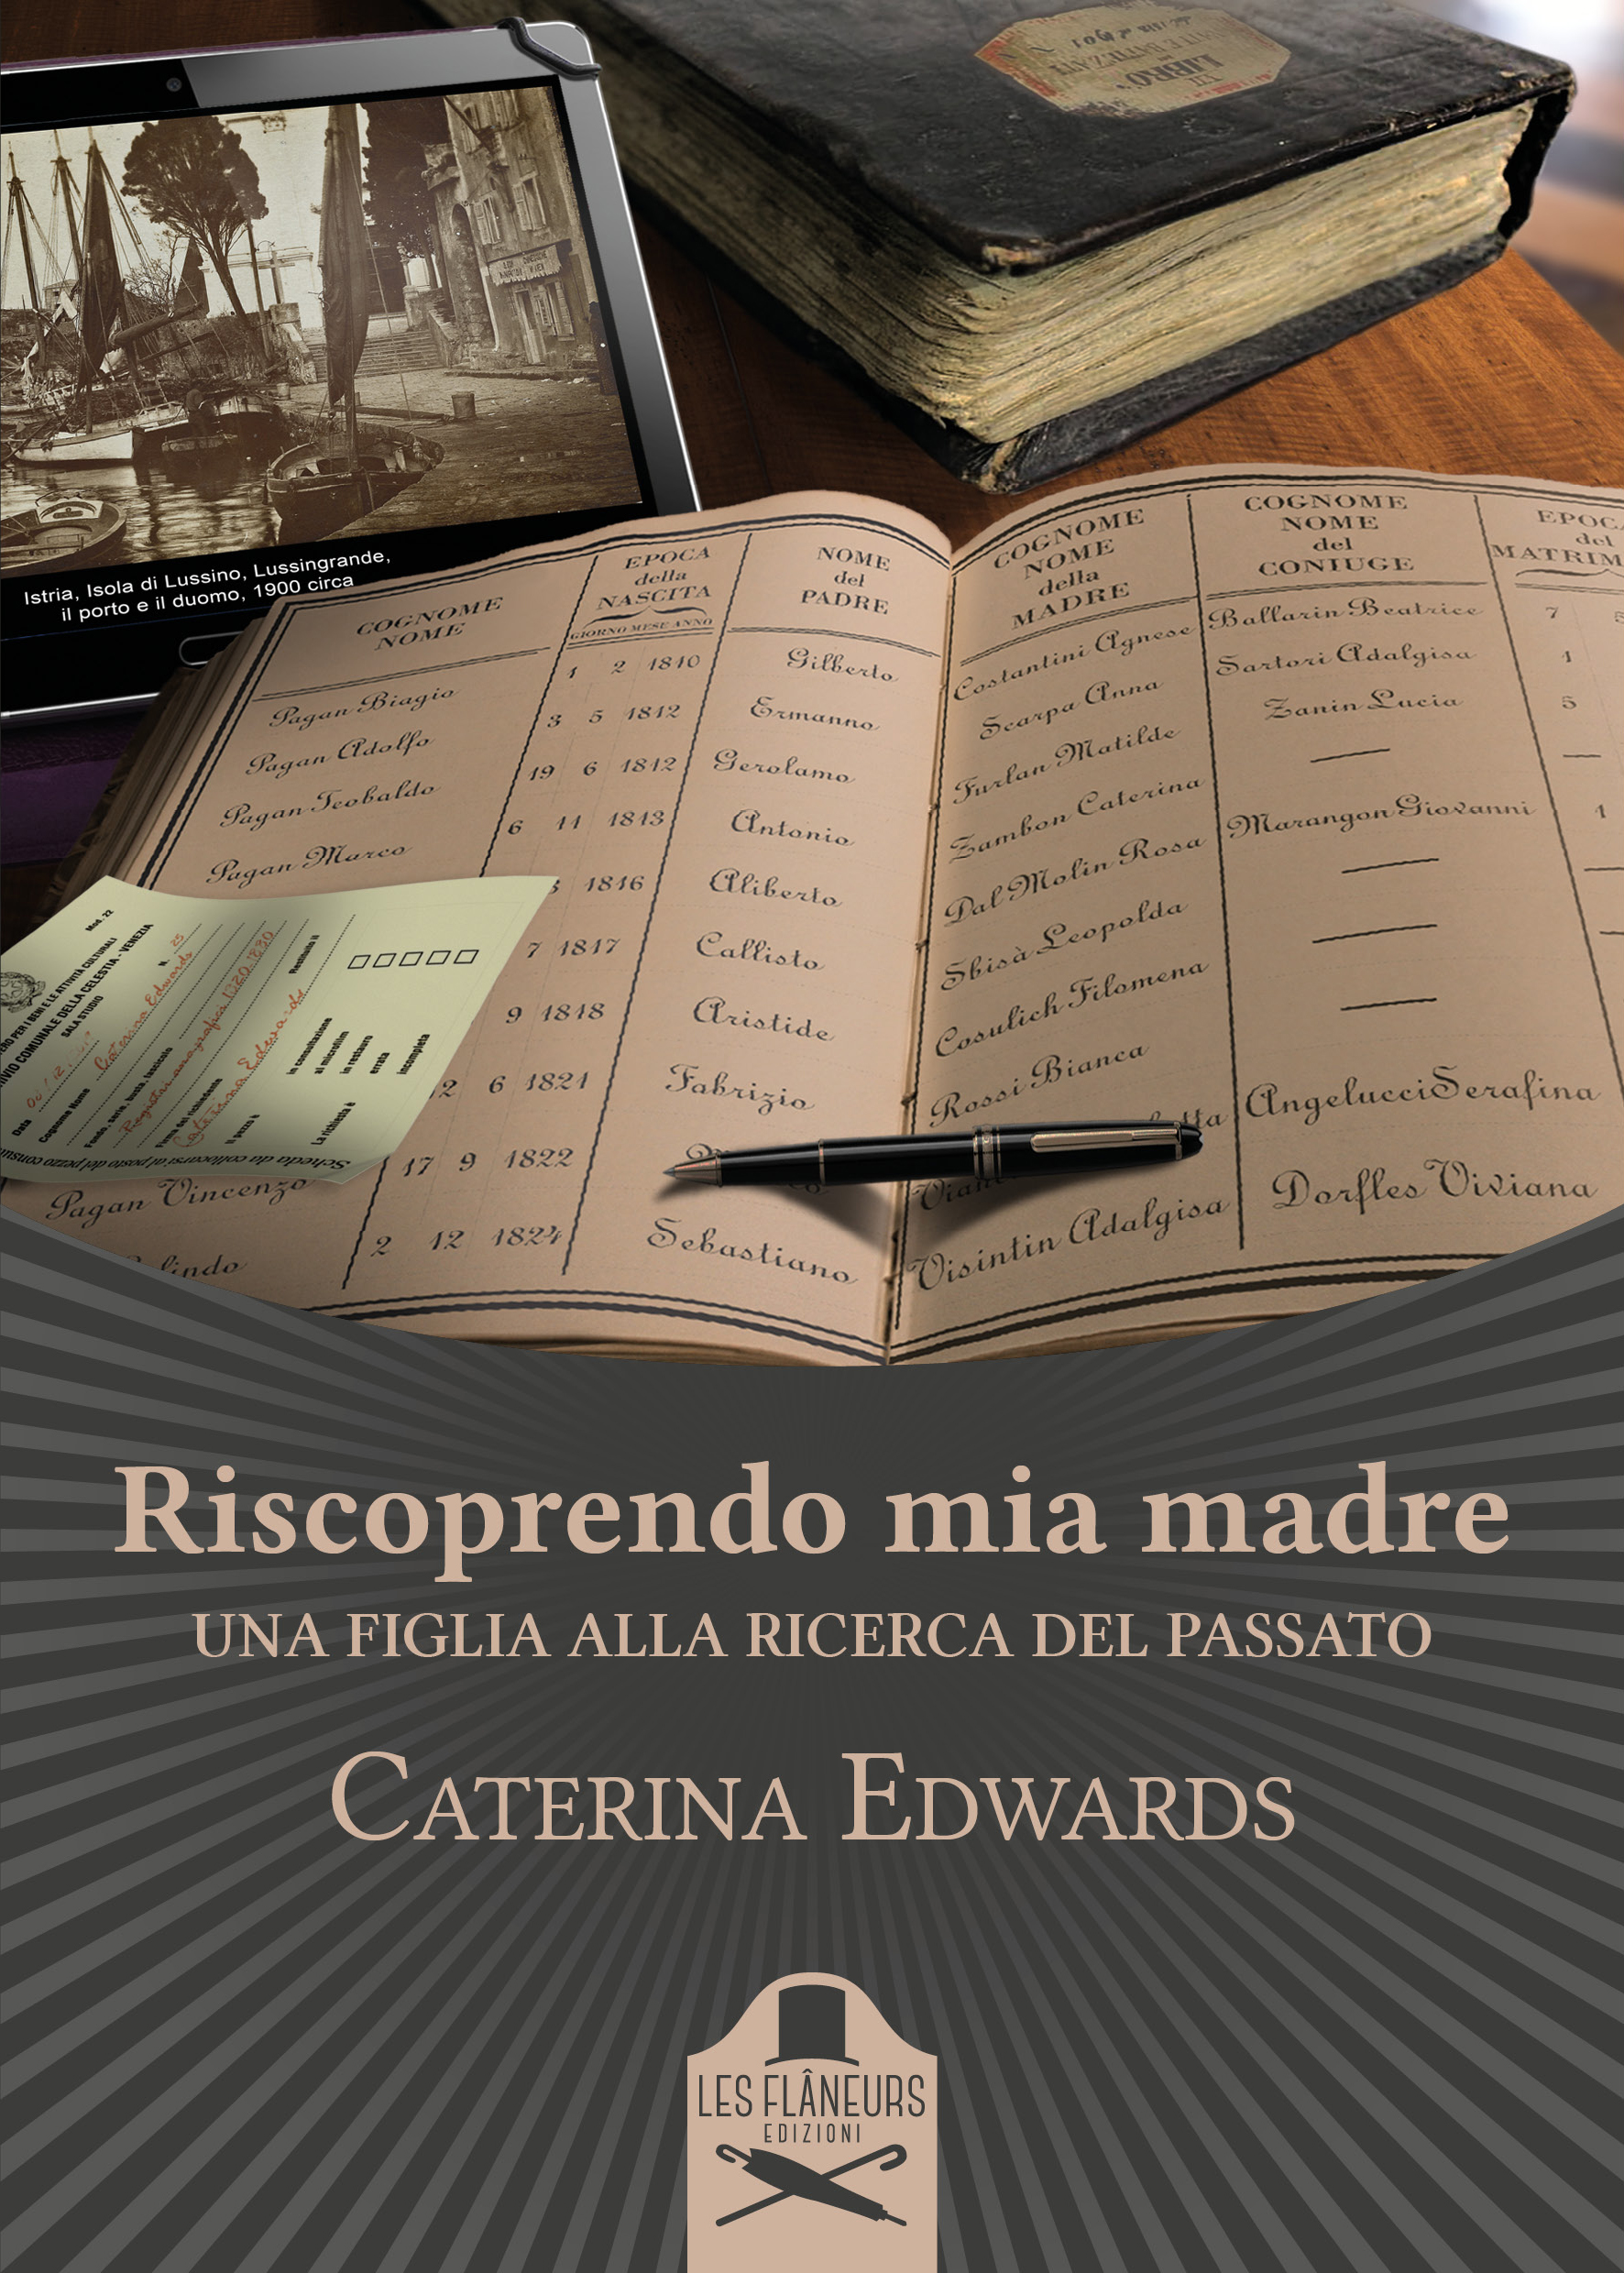 Foto 1 - Caterina Edwards presenta “Riscoprendo mia madre. Una figlia alla ricerca del passato”